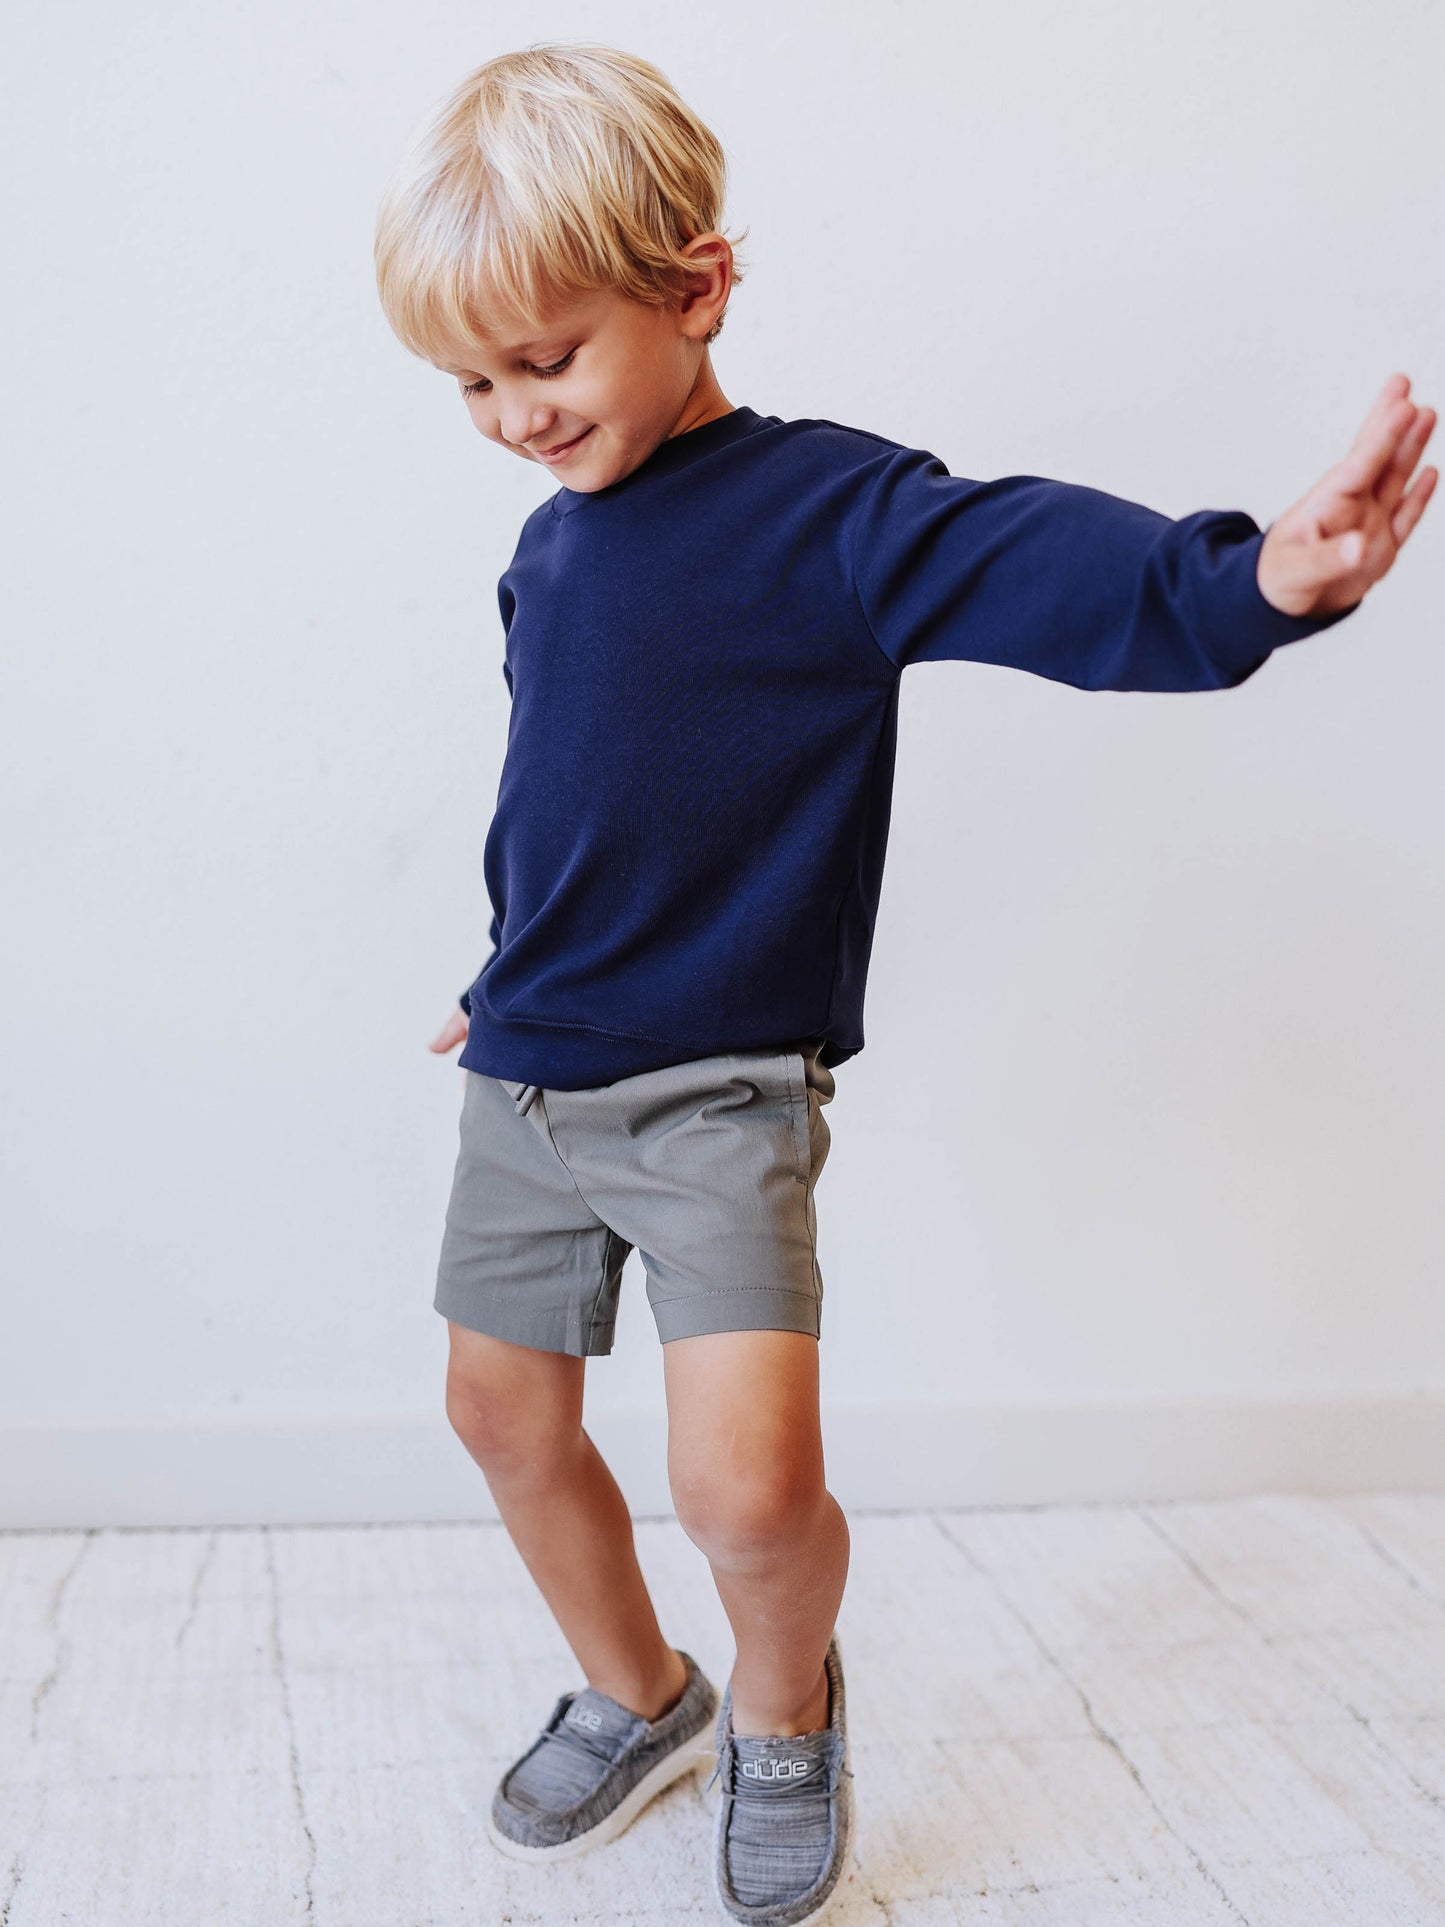 Boy's Shorts - Gray